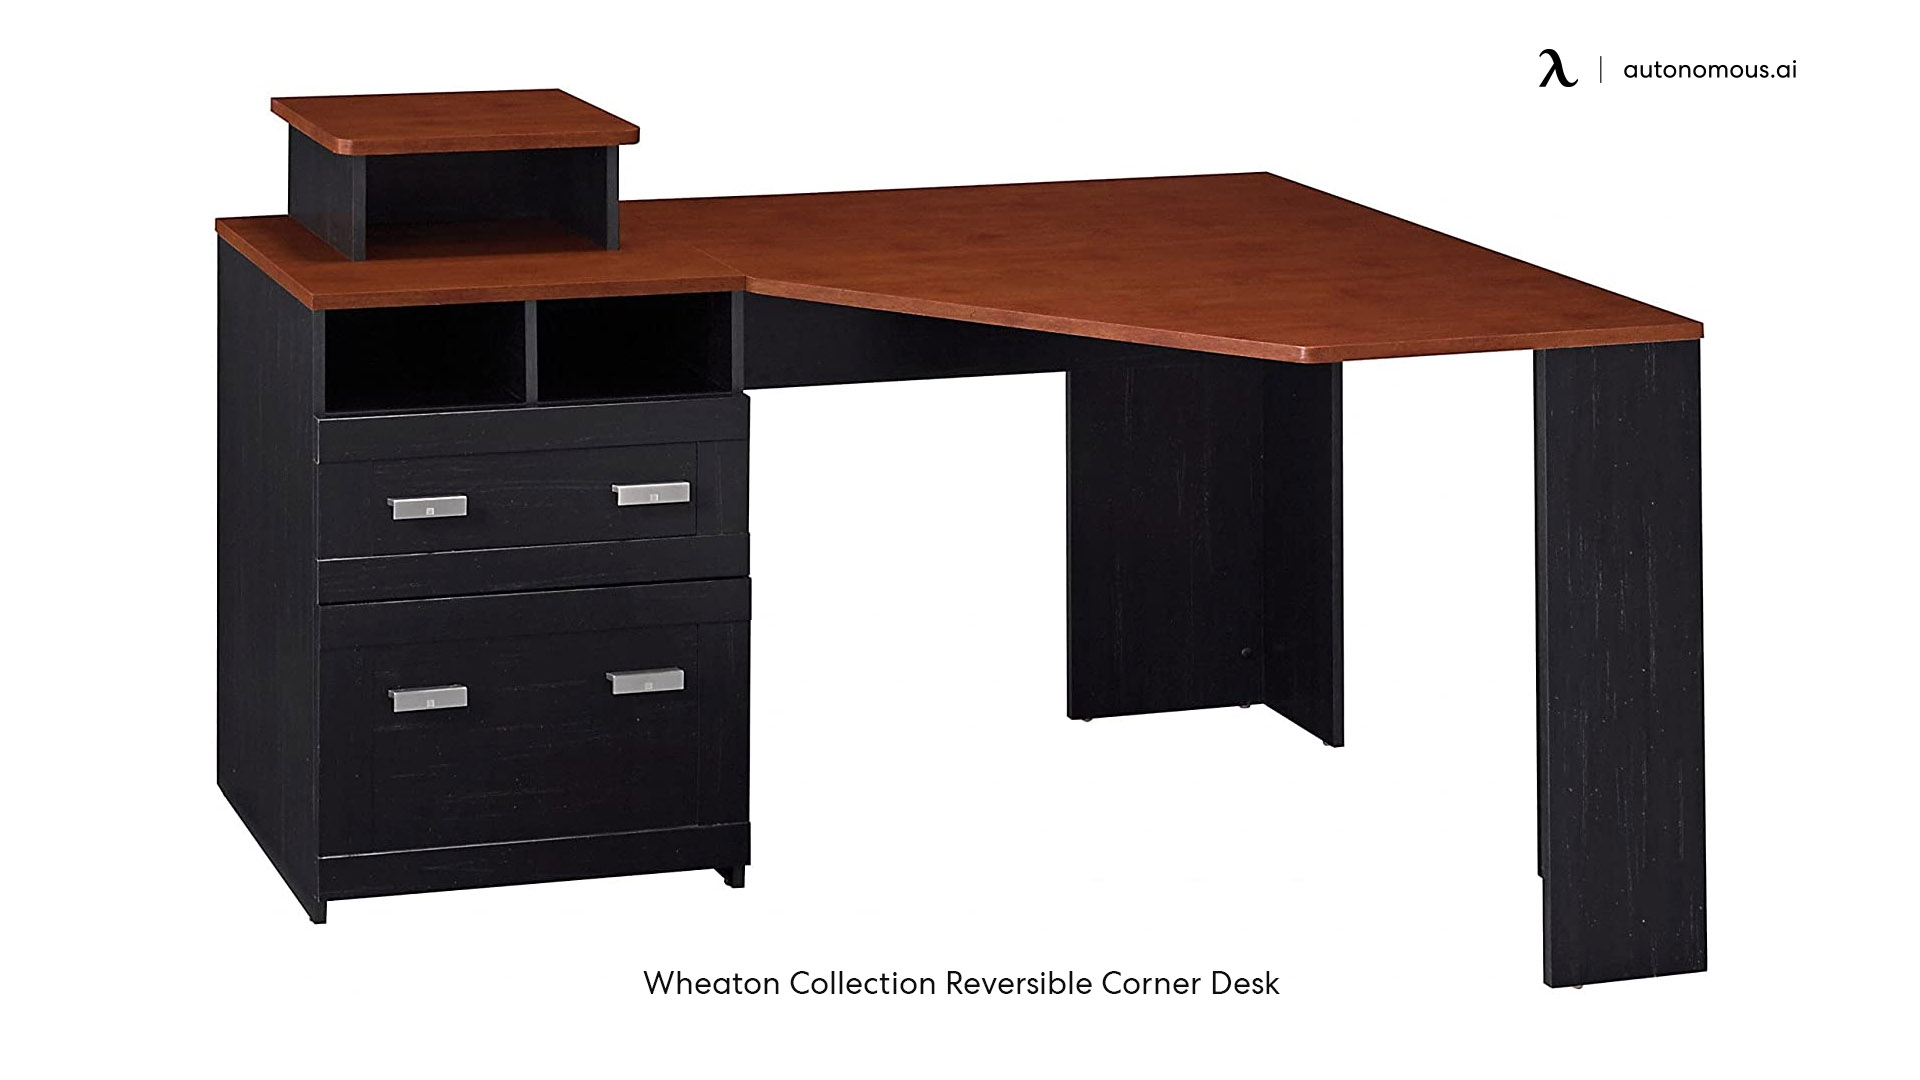 Wheaton Collection Reversible Corner Desk